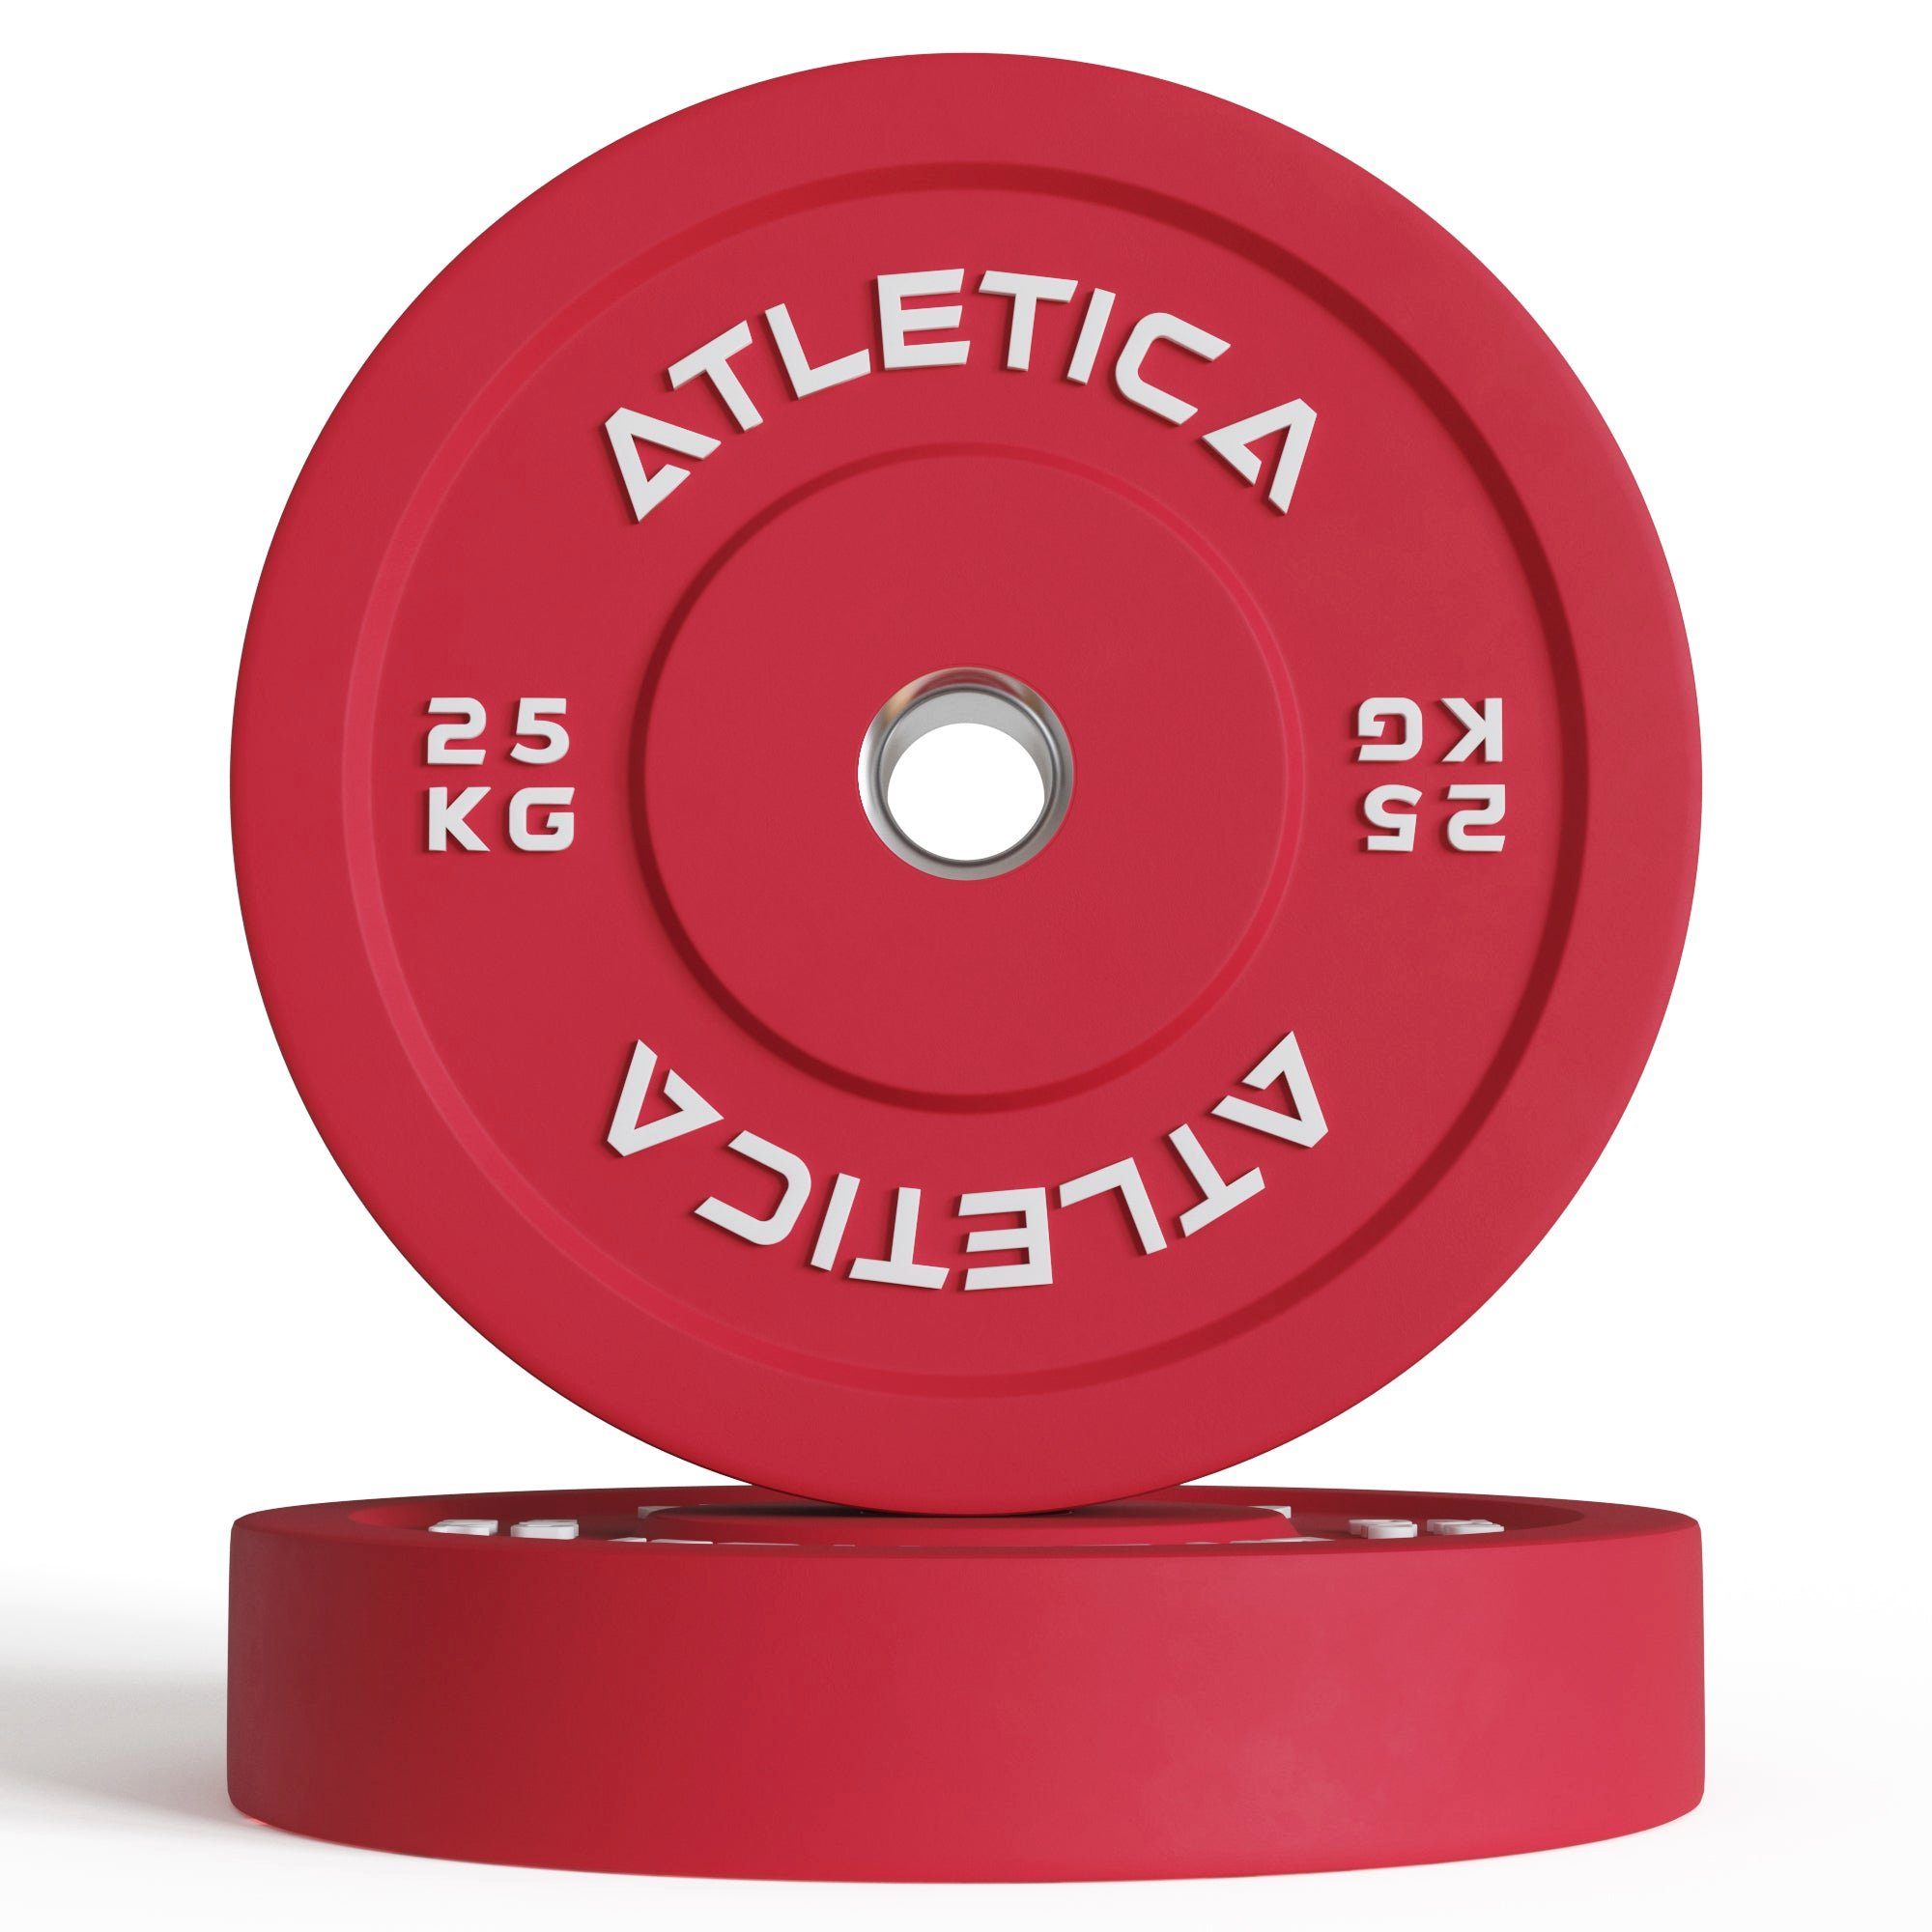 ATLETICA Langhantelstange Alpha Weightlifting Hantelstangen Premium Set, Trainings-Langhantel